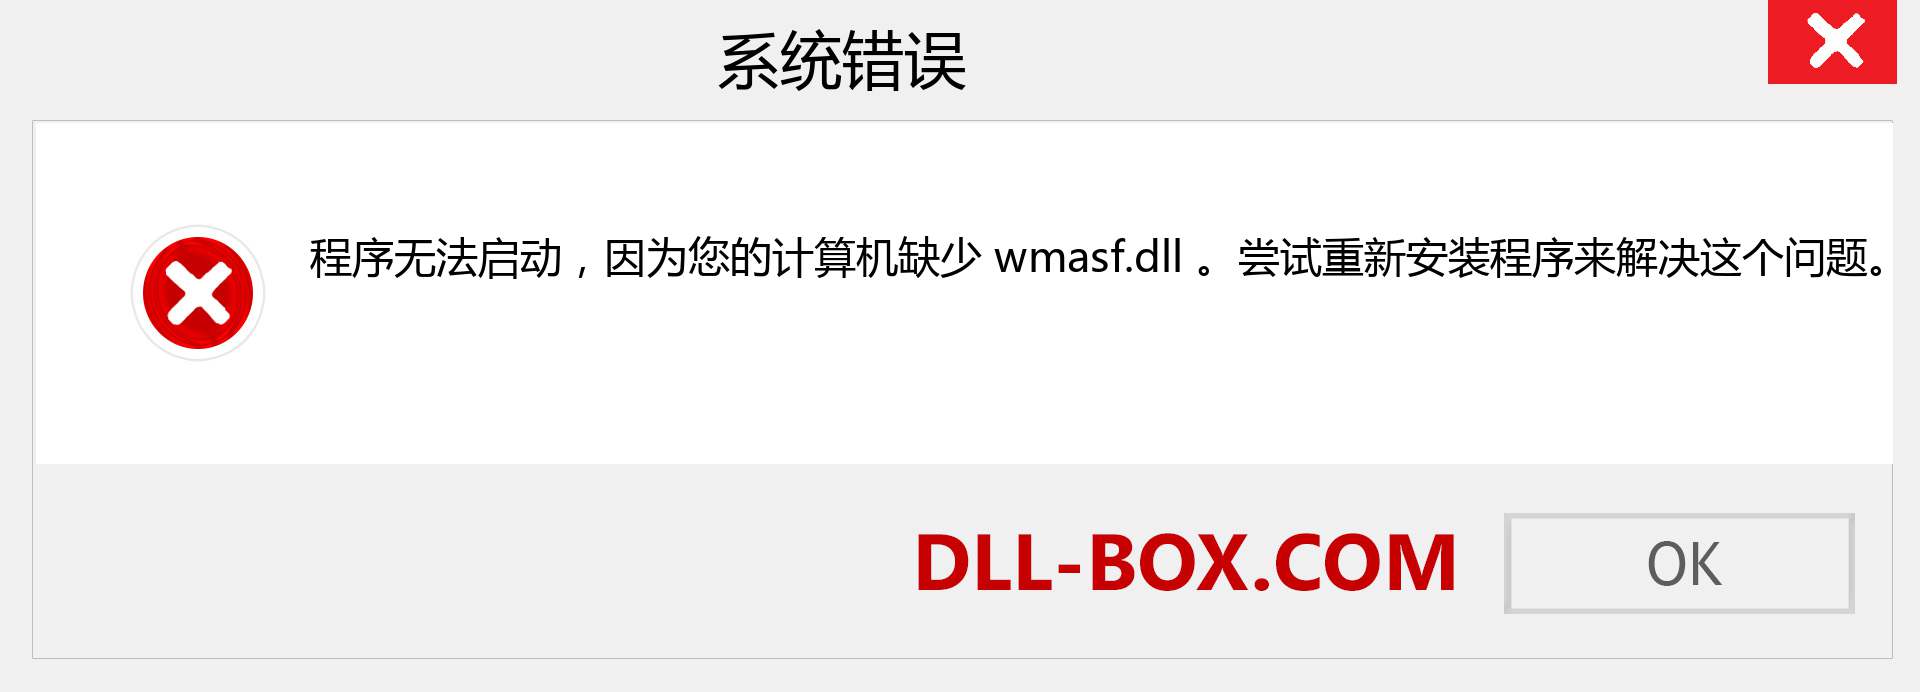 wmasf.dll 文件丢失？。 适用于 Windows 7、8、10 的下载 - 修复 Windows、照片、图像上的 wmasf dll 丢失错误